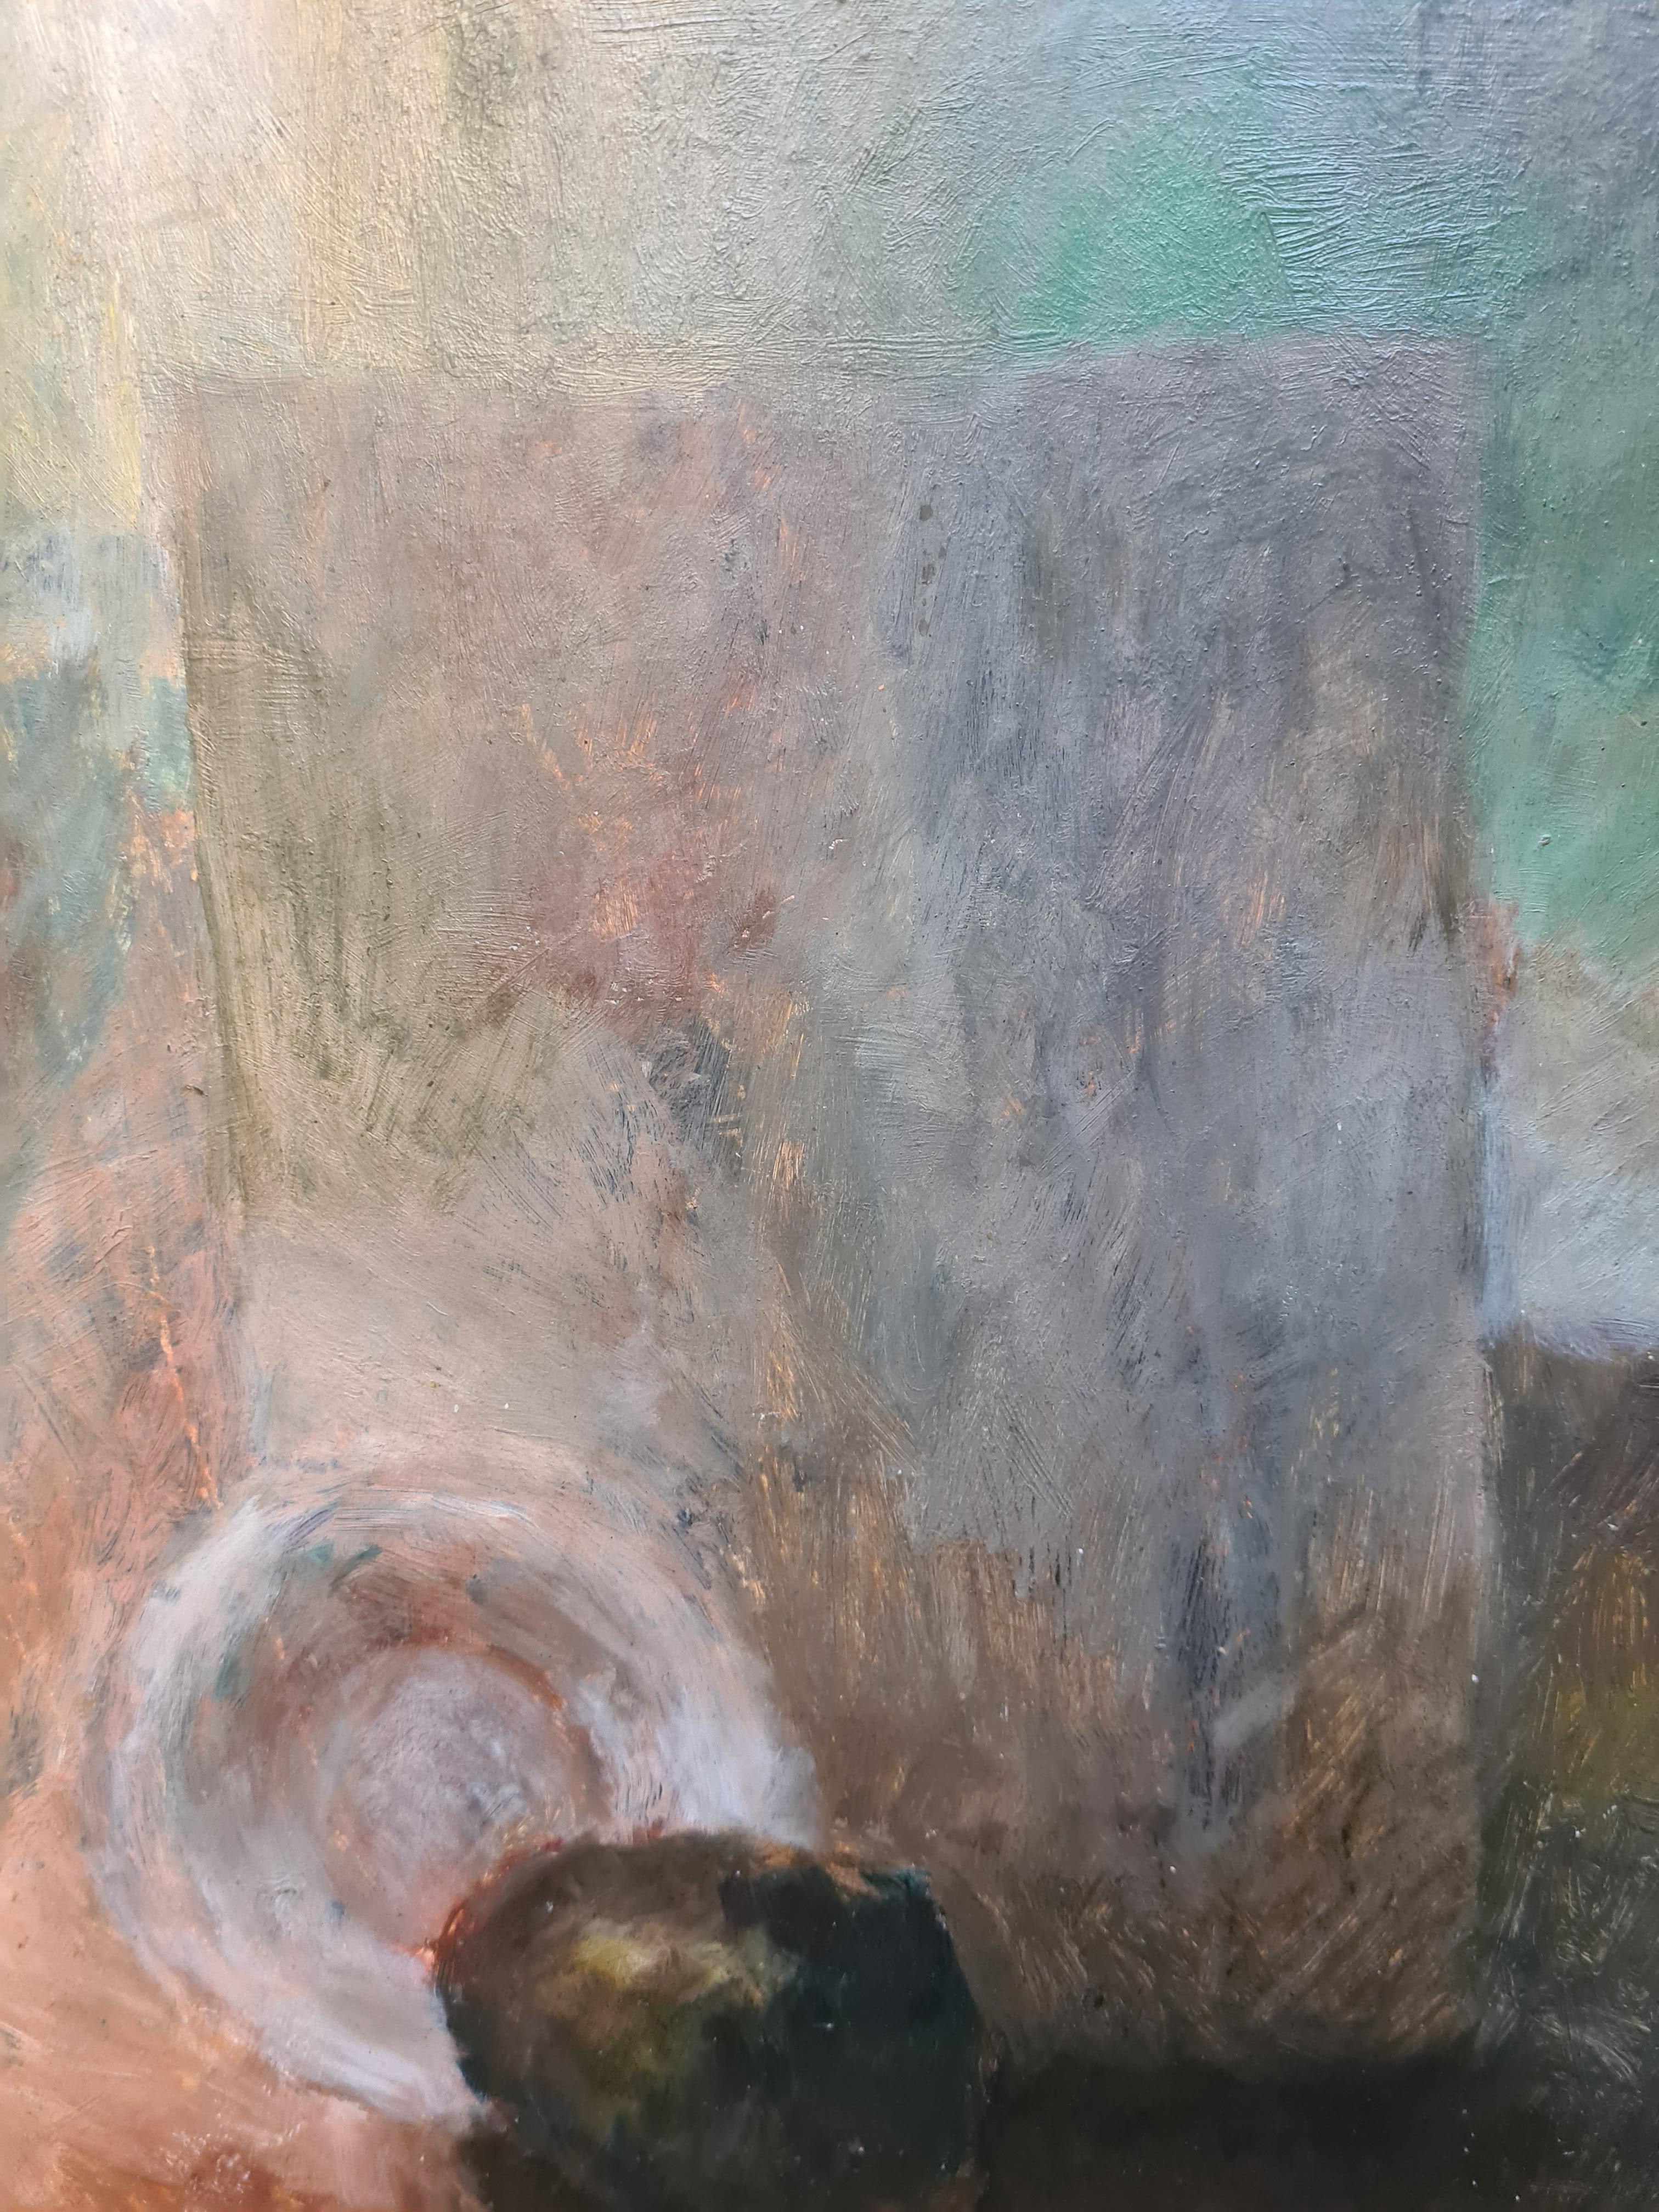 Mitte des 20. Jahrhunderts Öl auf Karton Postimpressionistisches Stilleben des polnischen Malers P. Mostowski, signiert unten rechts, präsentiert in modernem zeitgenössischem Rahmen.

Charmantes und friedliches Stillleben, schöner Kontrast von Licht